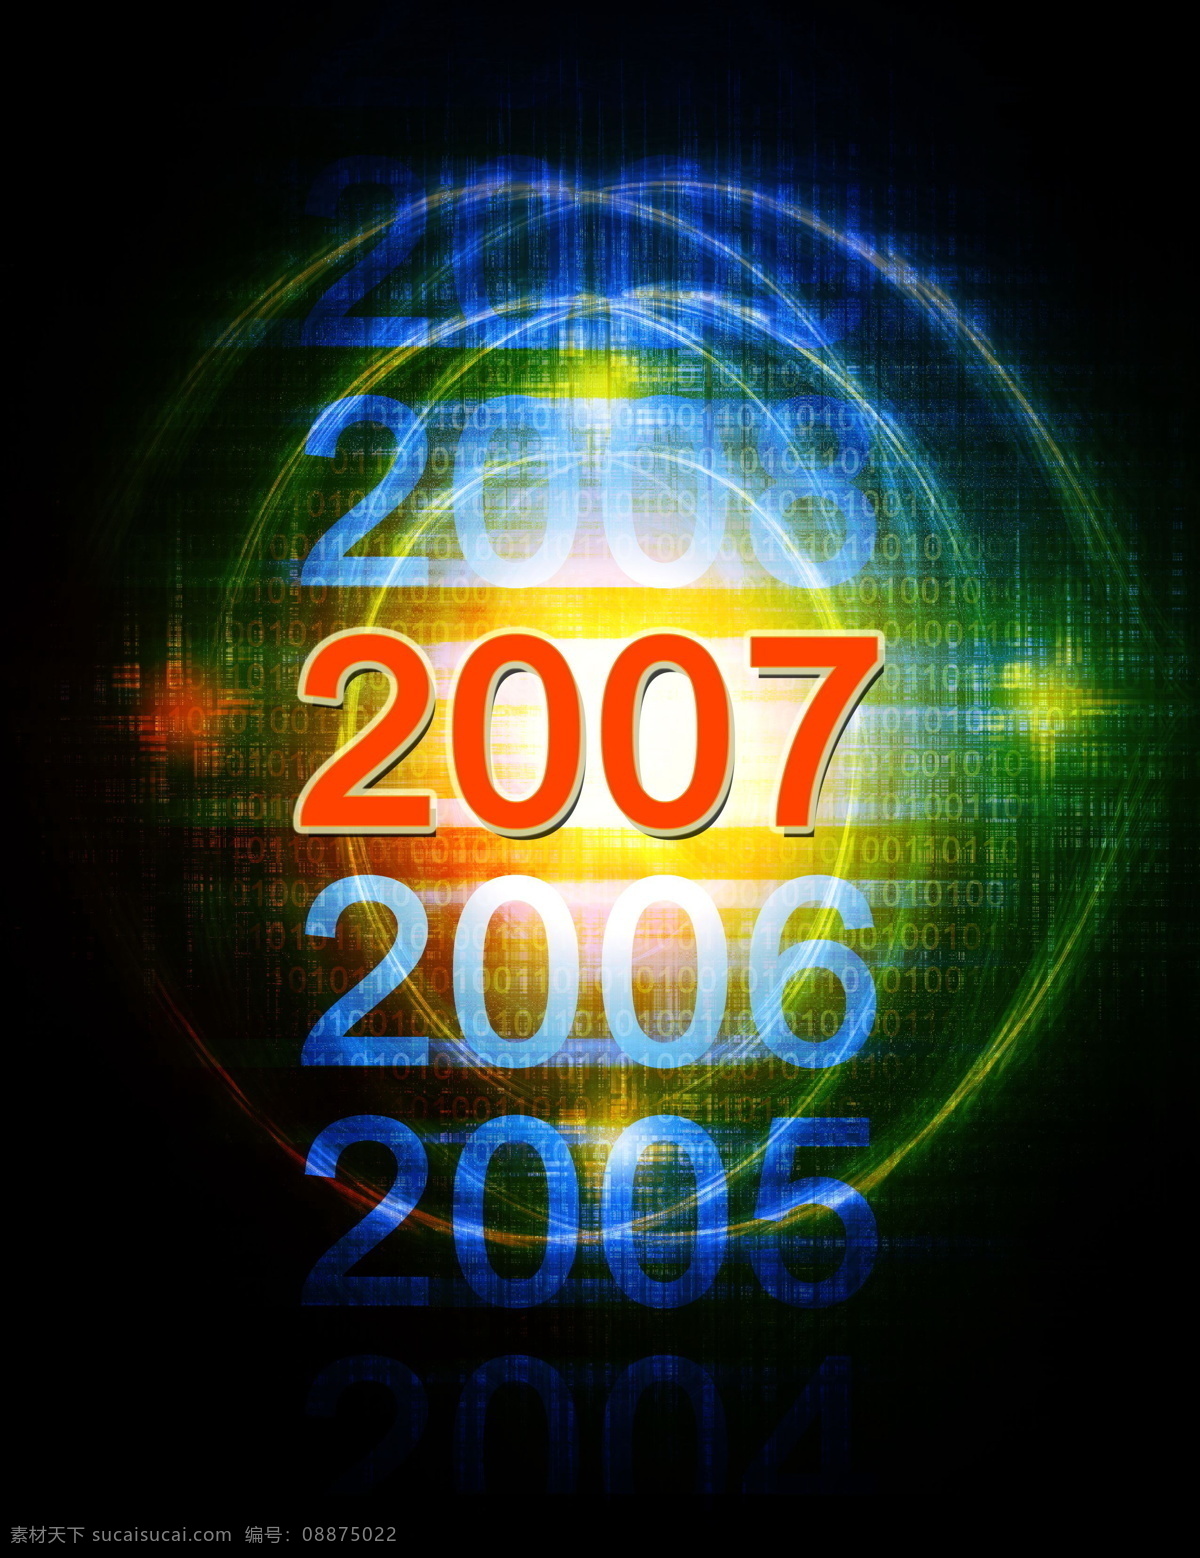 全球 首席 大百科 标志 2006 圆球 圆点 色彩 2007 烟花